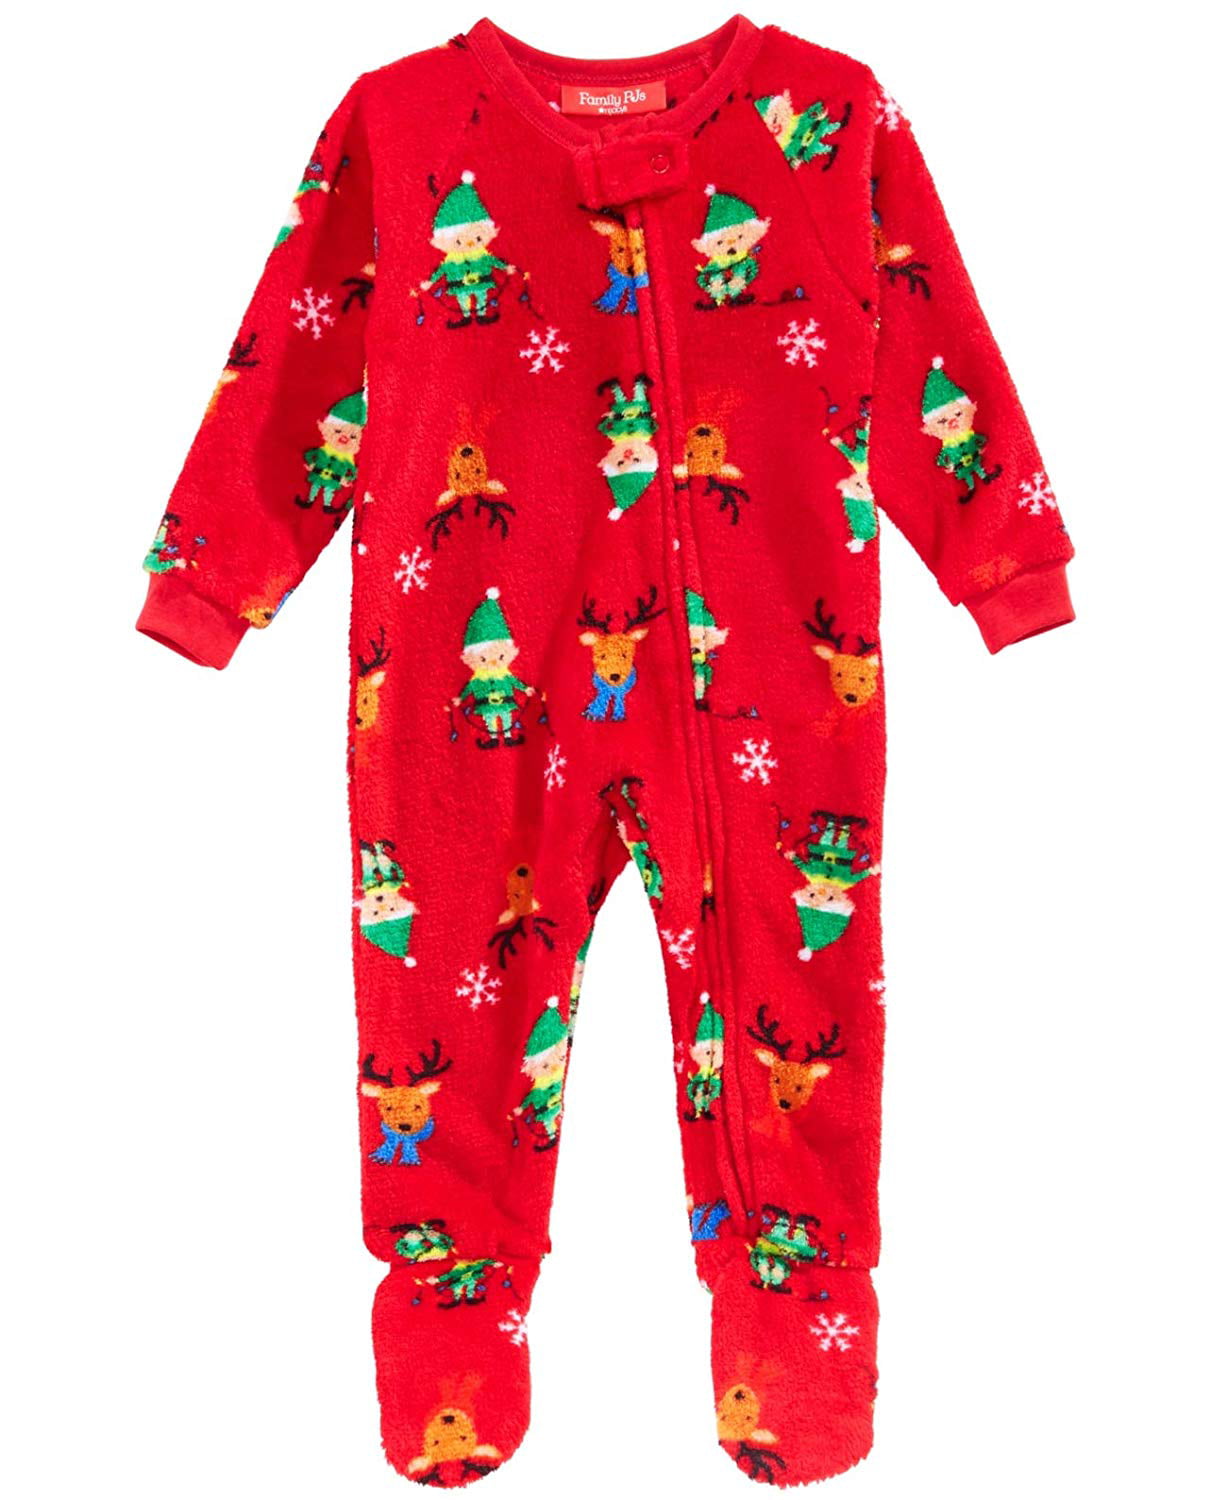 Family PJs - Family Pajamas Unisex Kid's Footed Pajamas Elf Red 24 MOS ...